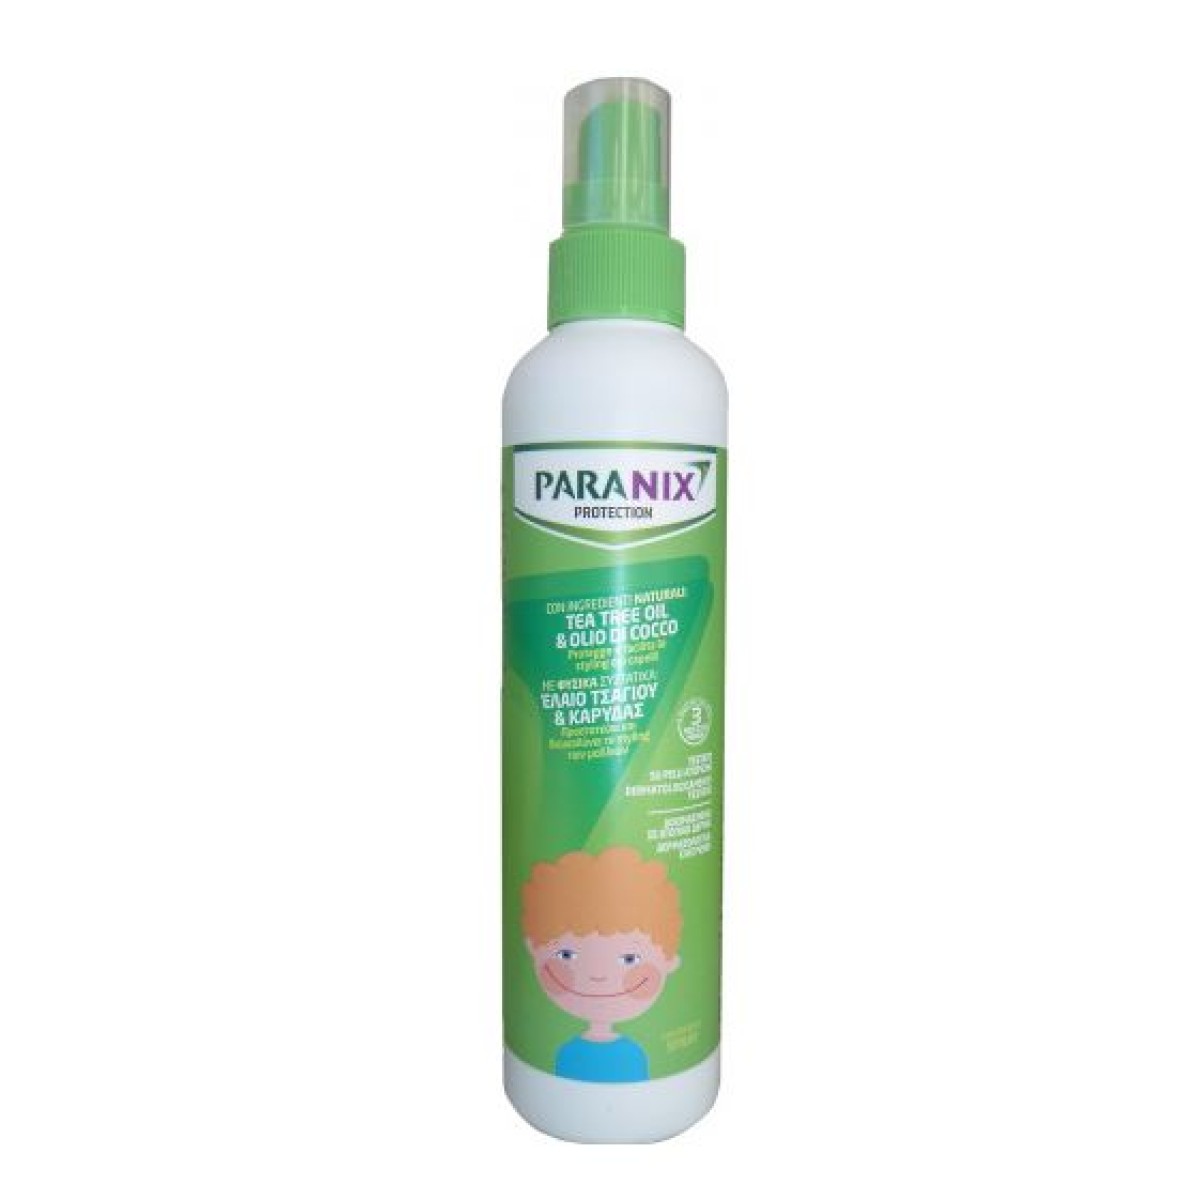 Paranix  | Protection Spray Αντιφθειρικό Προληπτικό Σπρέι για Αγόρια | 250ml